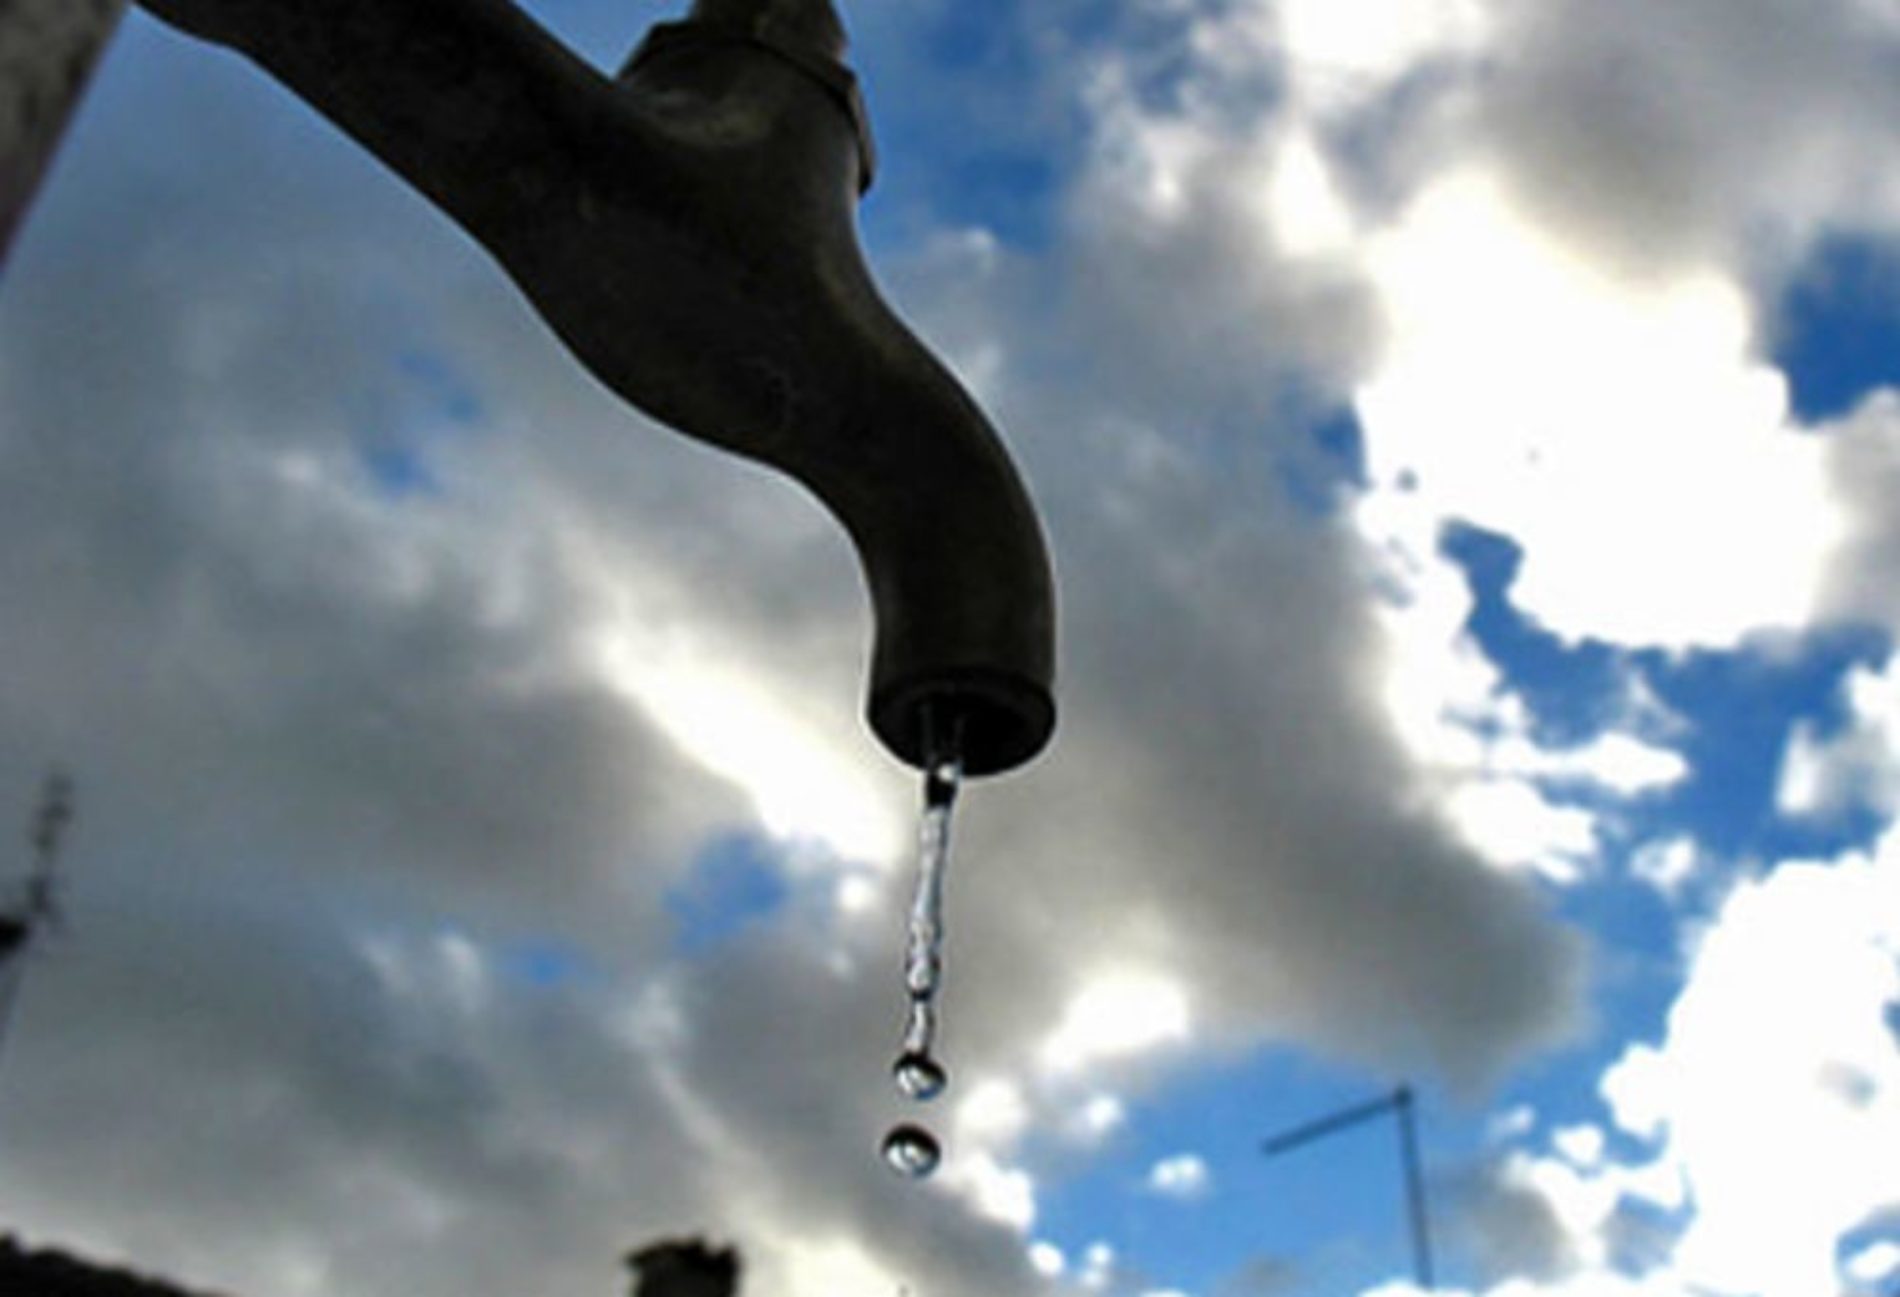 Bollette dell’acqua, l’Ati alla Regione: “Investimenti non gravino sulla tariffa, una maggiore contribuzione pubblica è la soluzione”